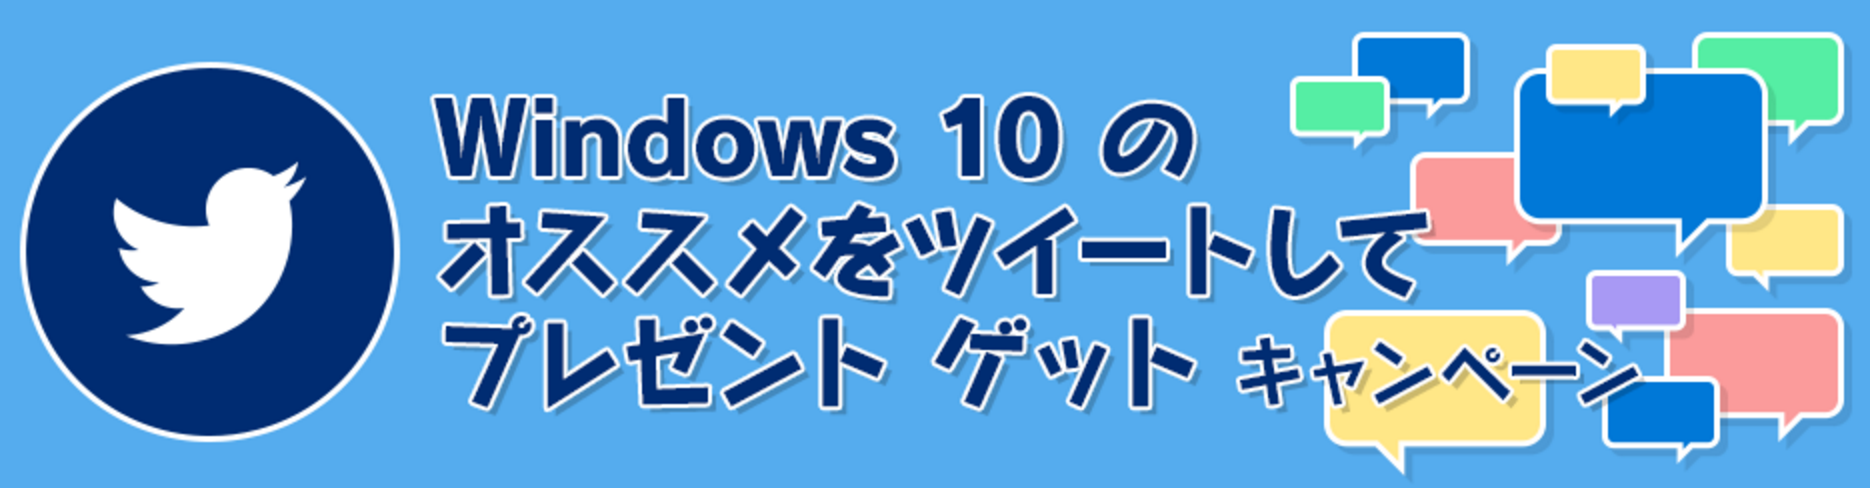 日本マイクロソフト、｢Windows 10｣のオススメをツイートすると最大10,000円分のギフト券が抽選で当たるキャンペーンを開始